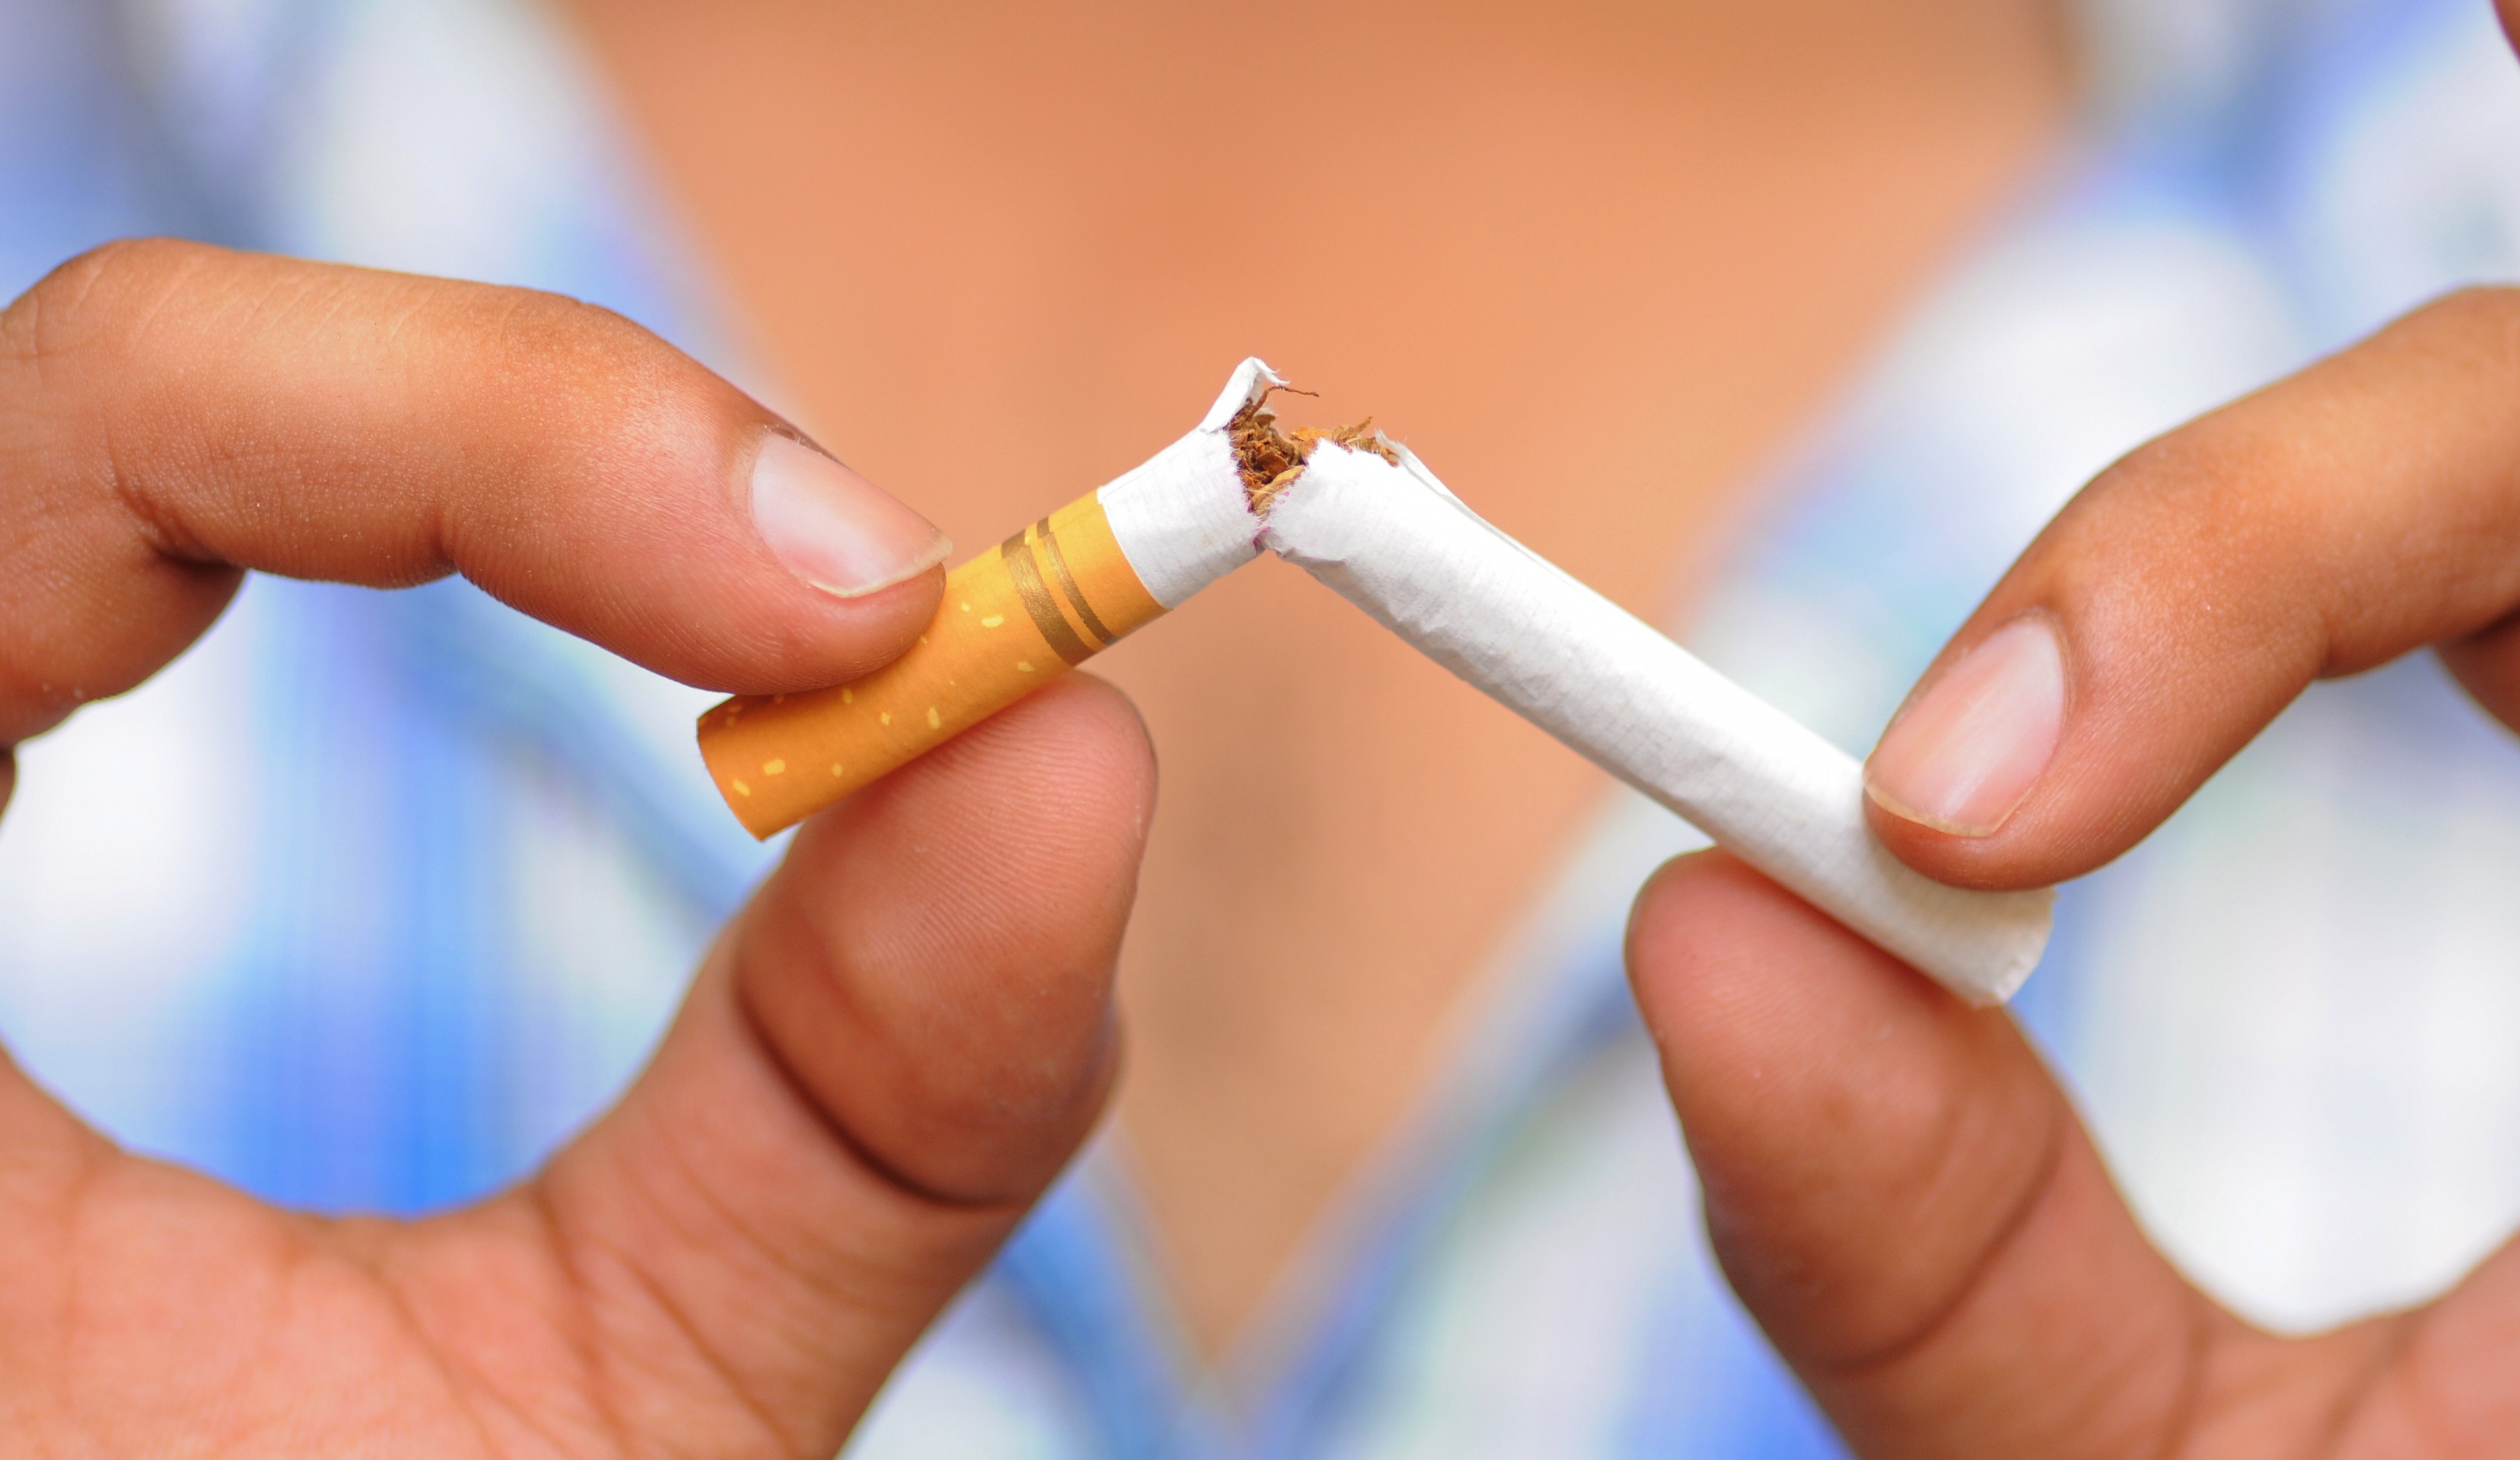 Ingyenes dohányzásellenes alkalmazás segít a leszokásban